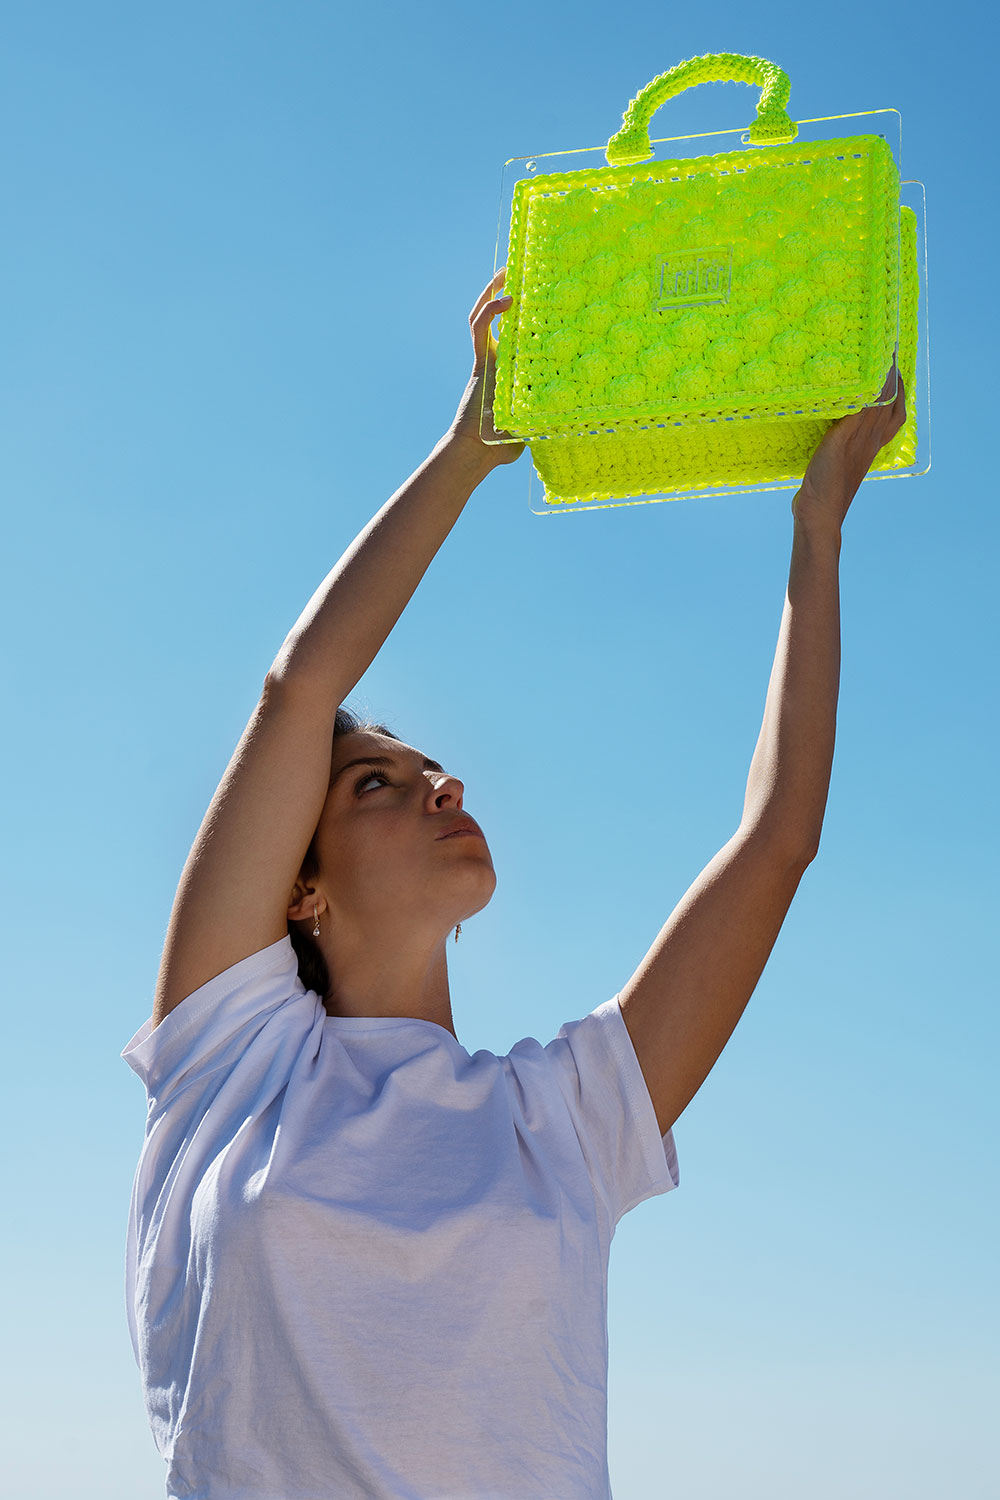 500 P/L Plexiglass Bag in Yellow